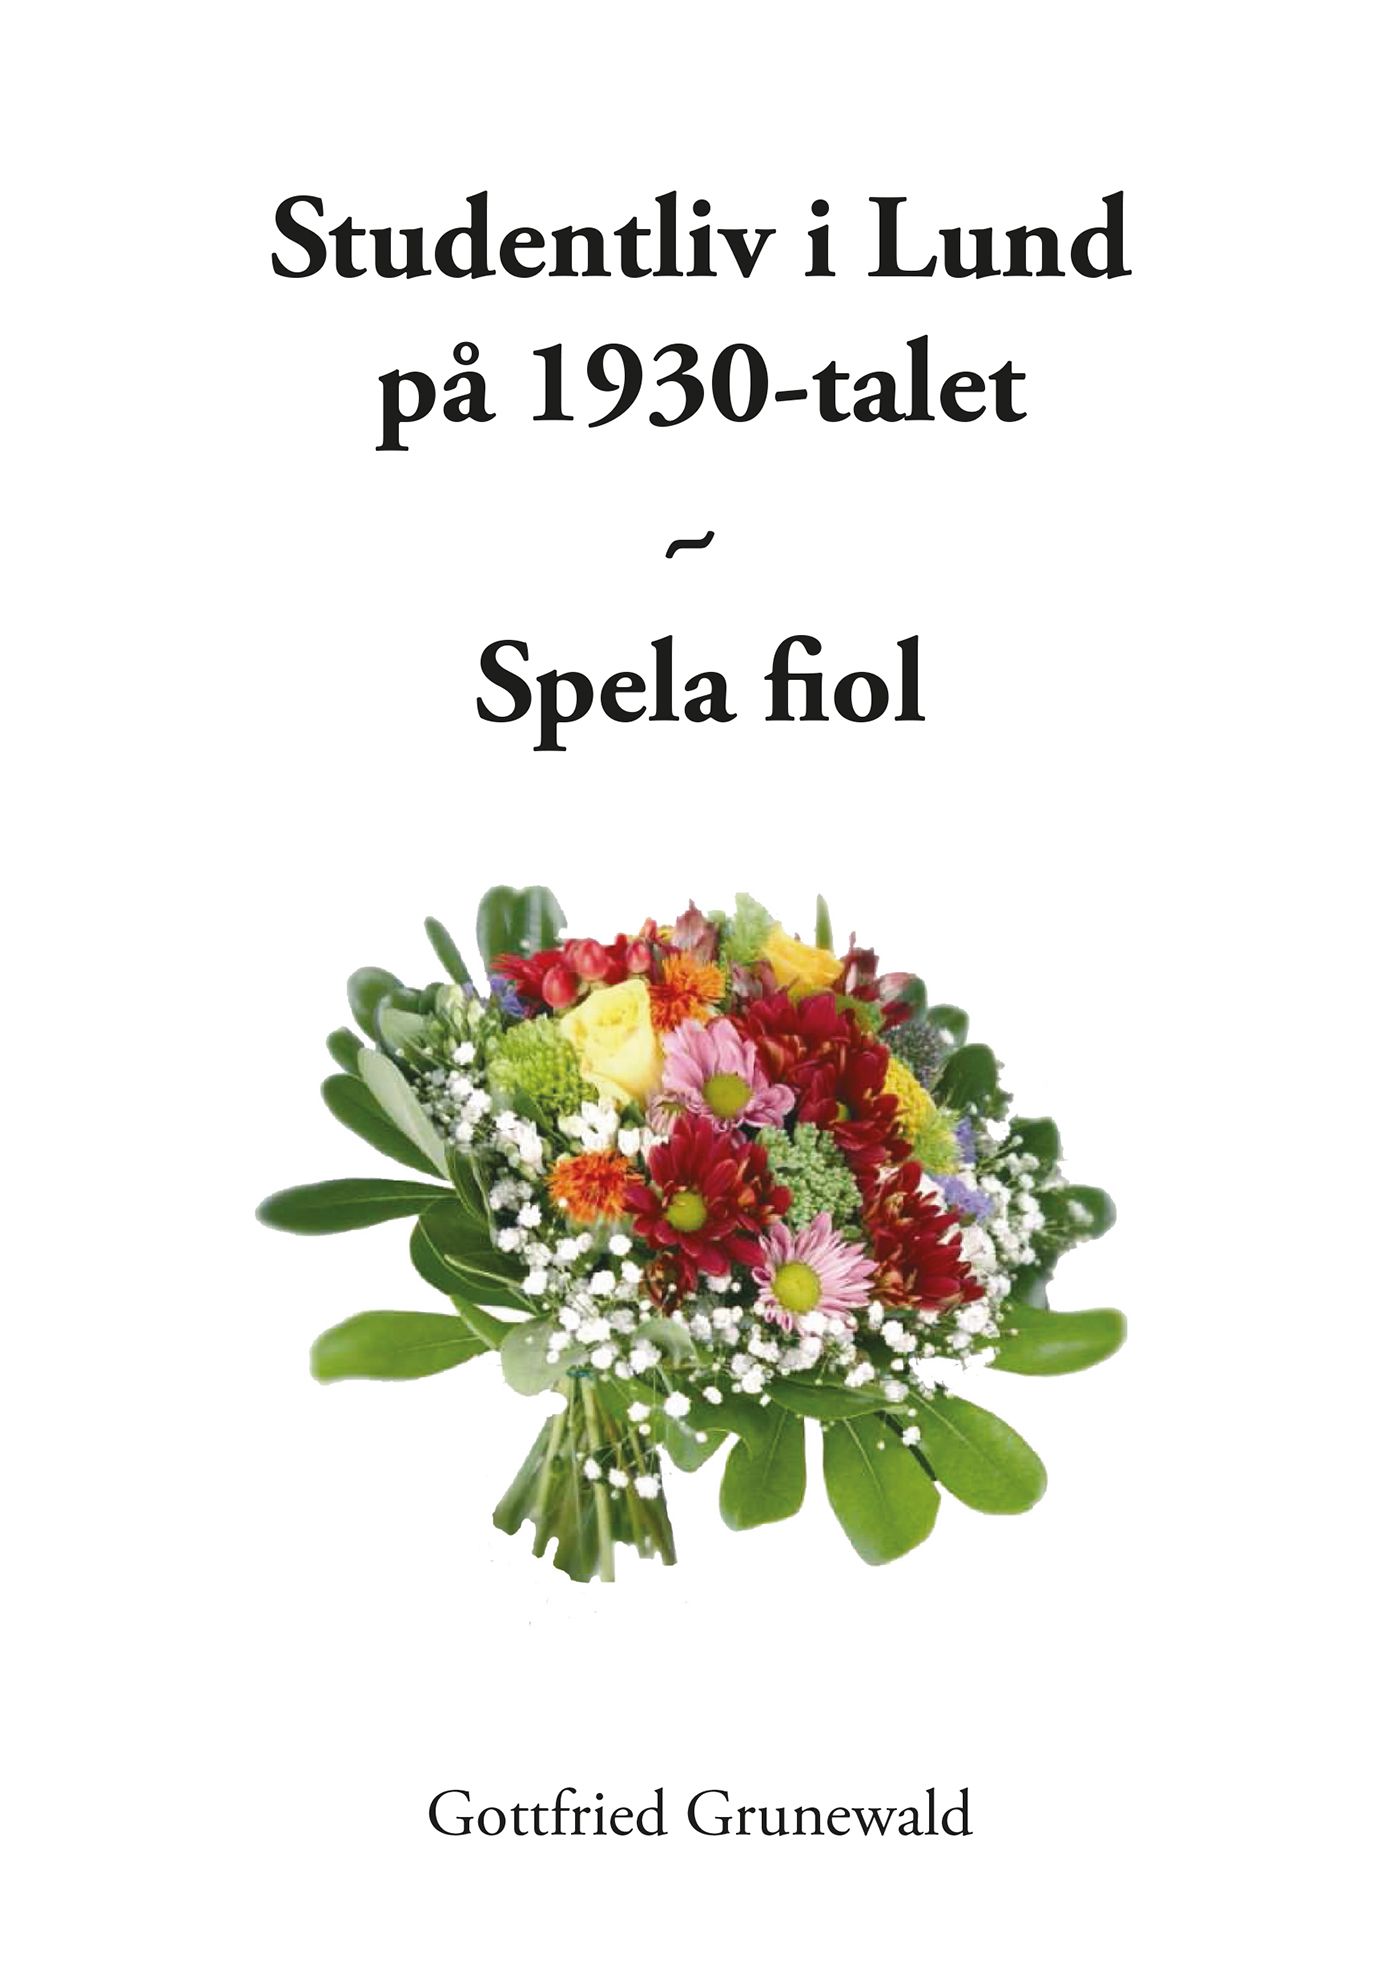 Studentliv i Lund på 1930-talet - Spela fiol, eBook by Gottfried Grunewald